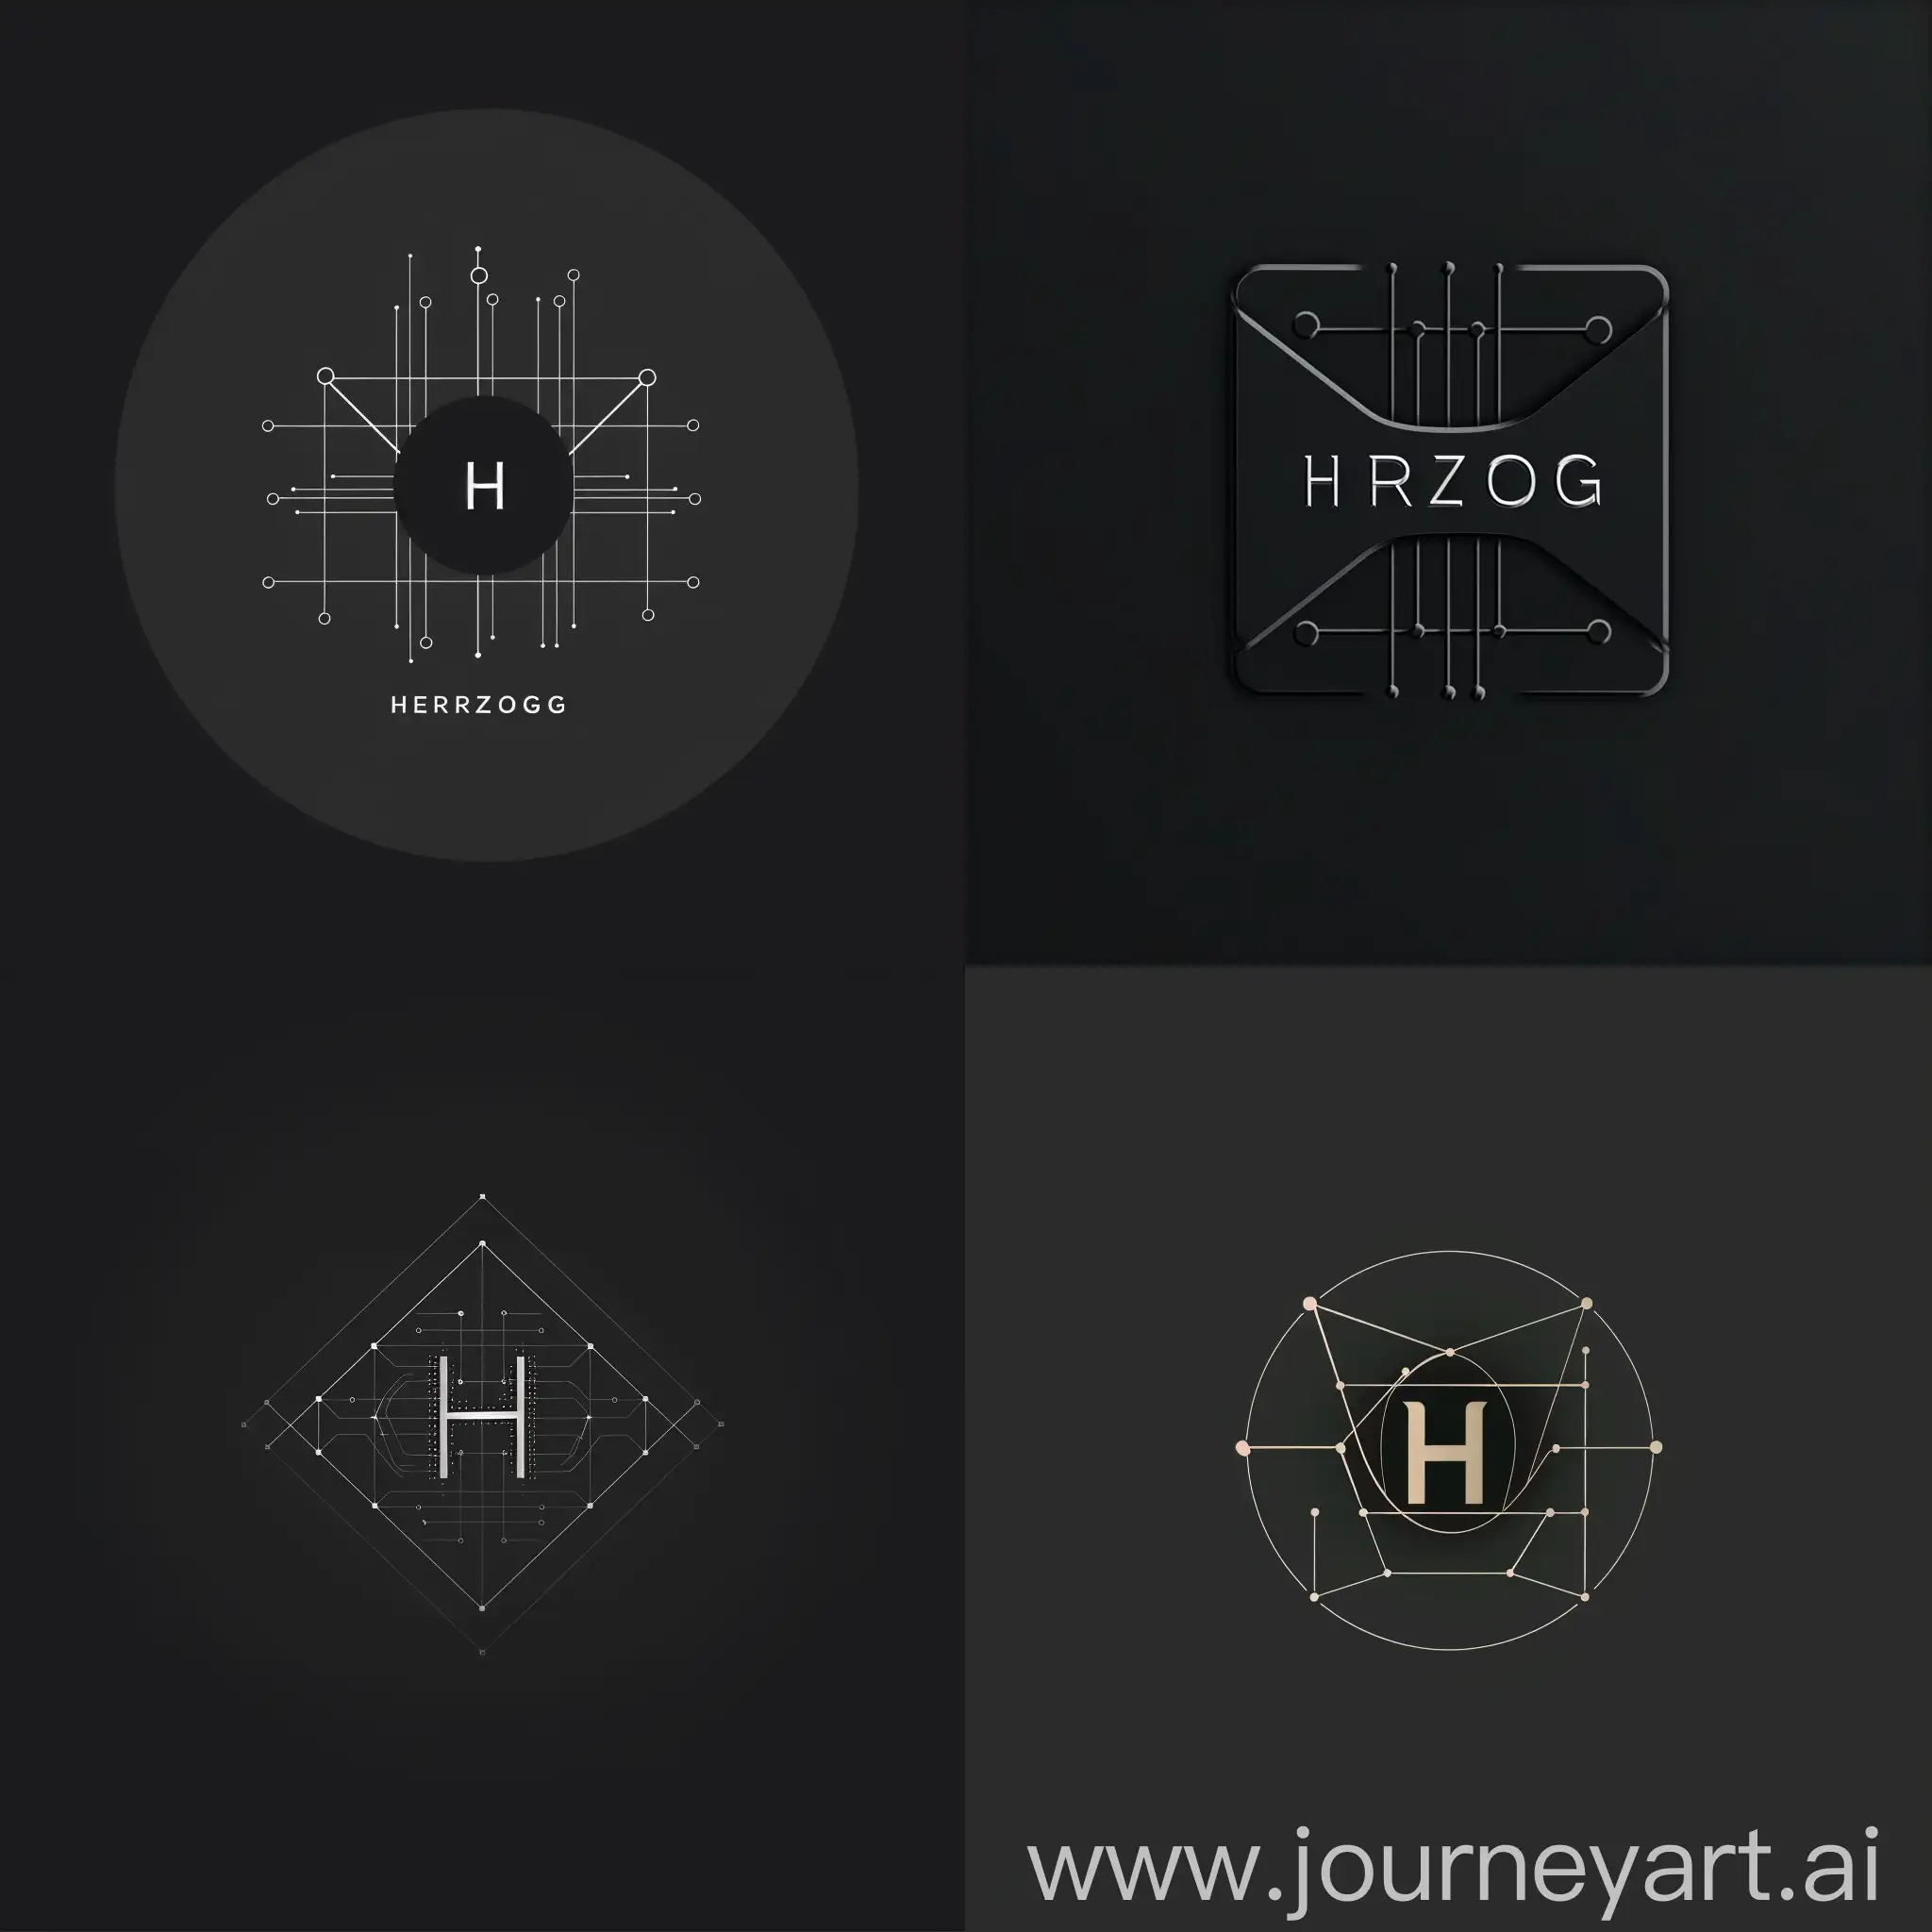 Создай логотип, для IT-компании с названием HERZOG, где по середине будет буква "H" и сеть интернет, минималистичный, но очень красивый и которого ни у кого нет, в тёмных оттенках